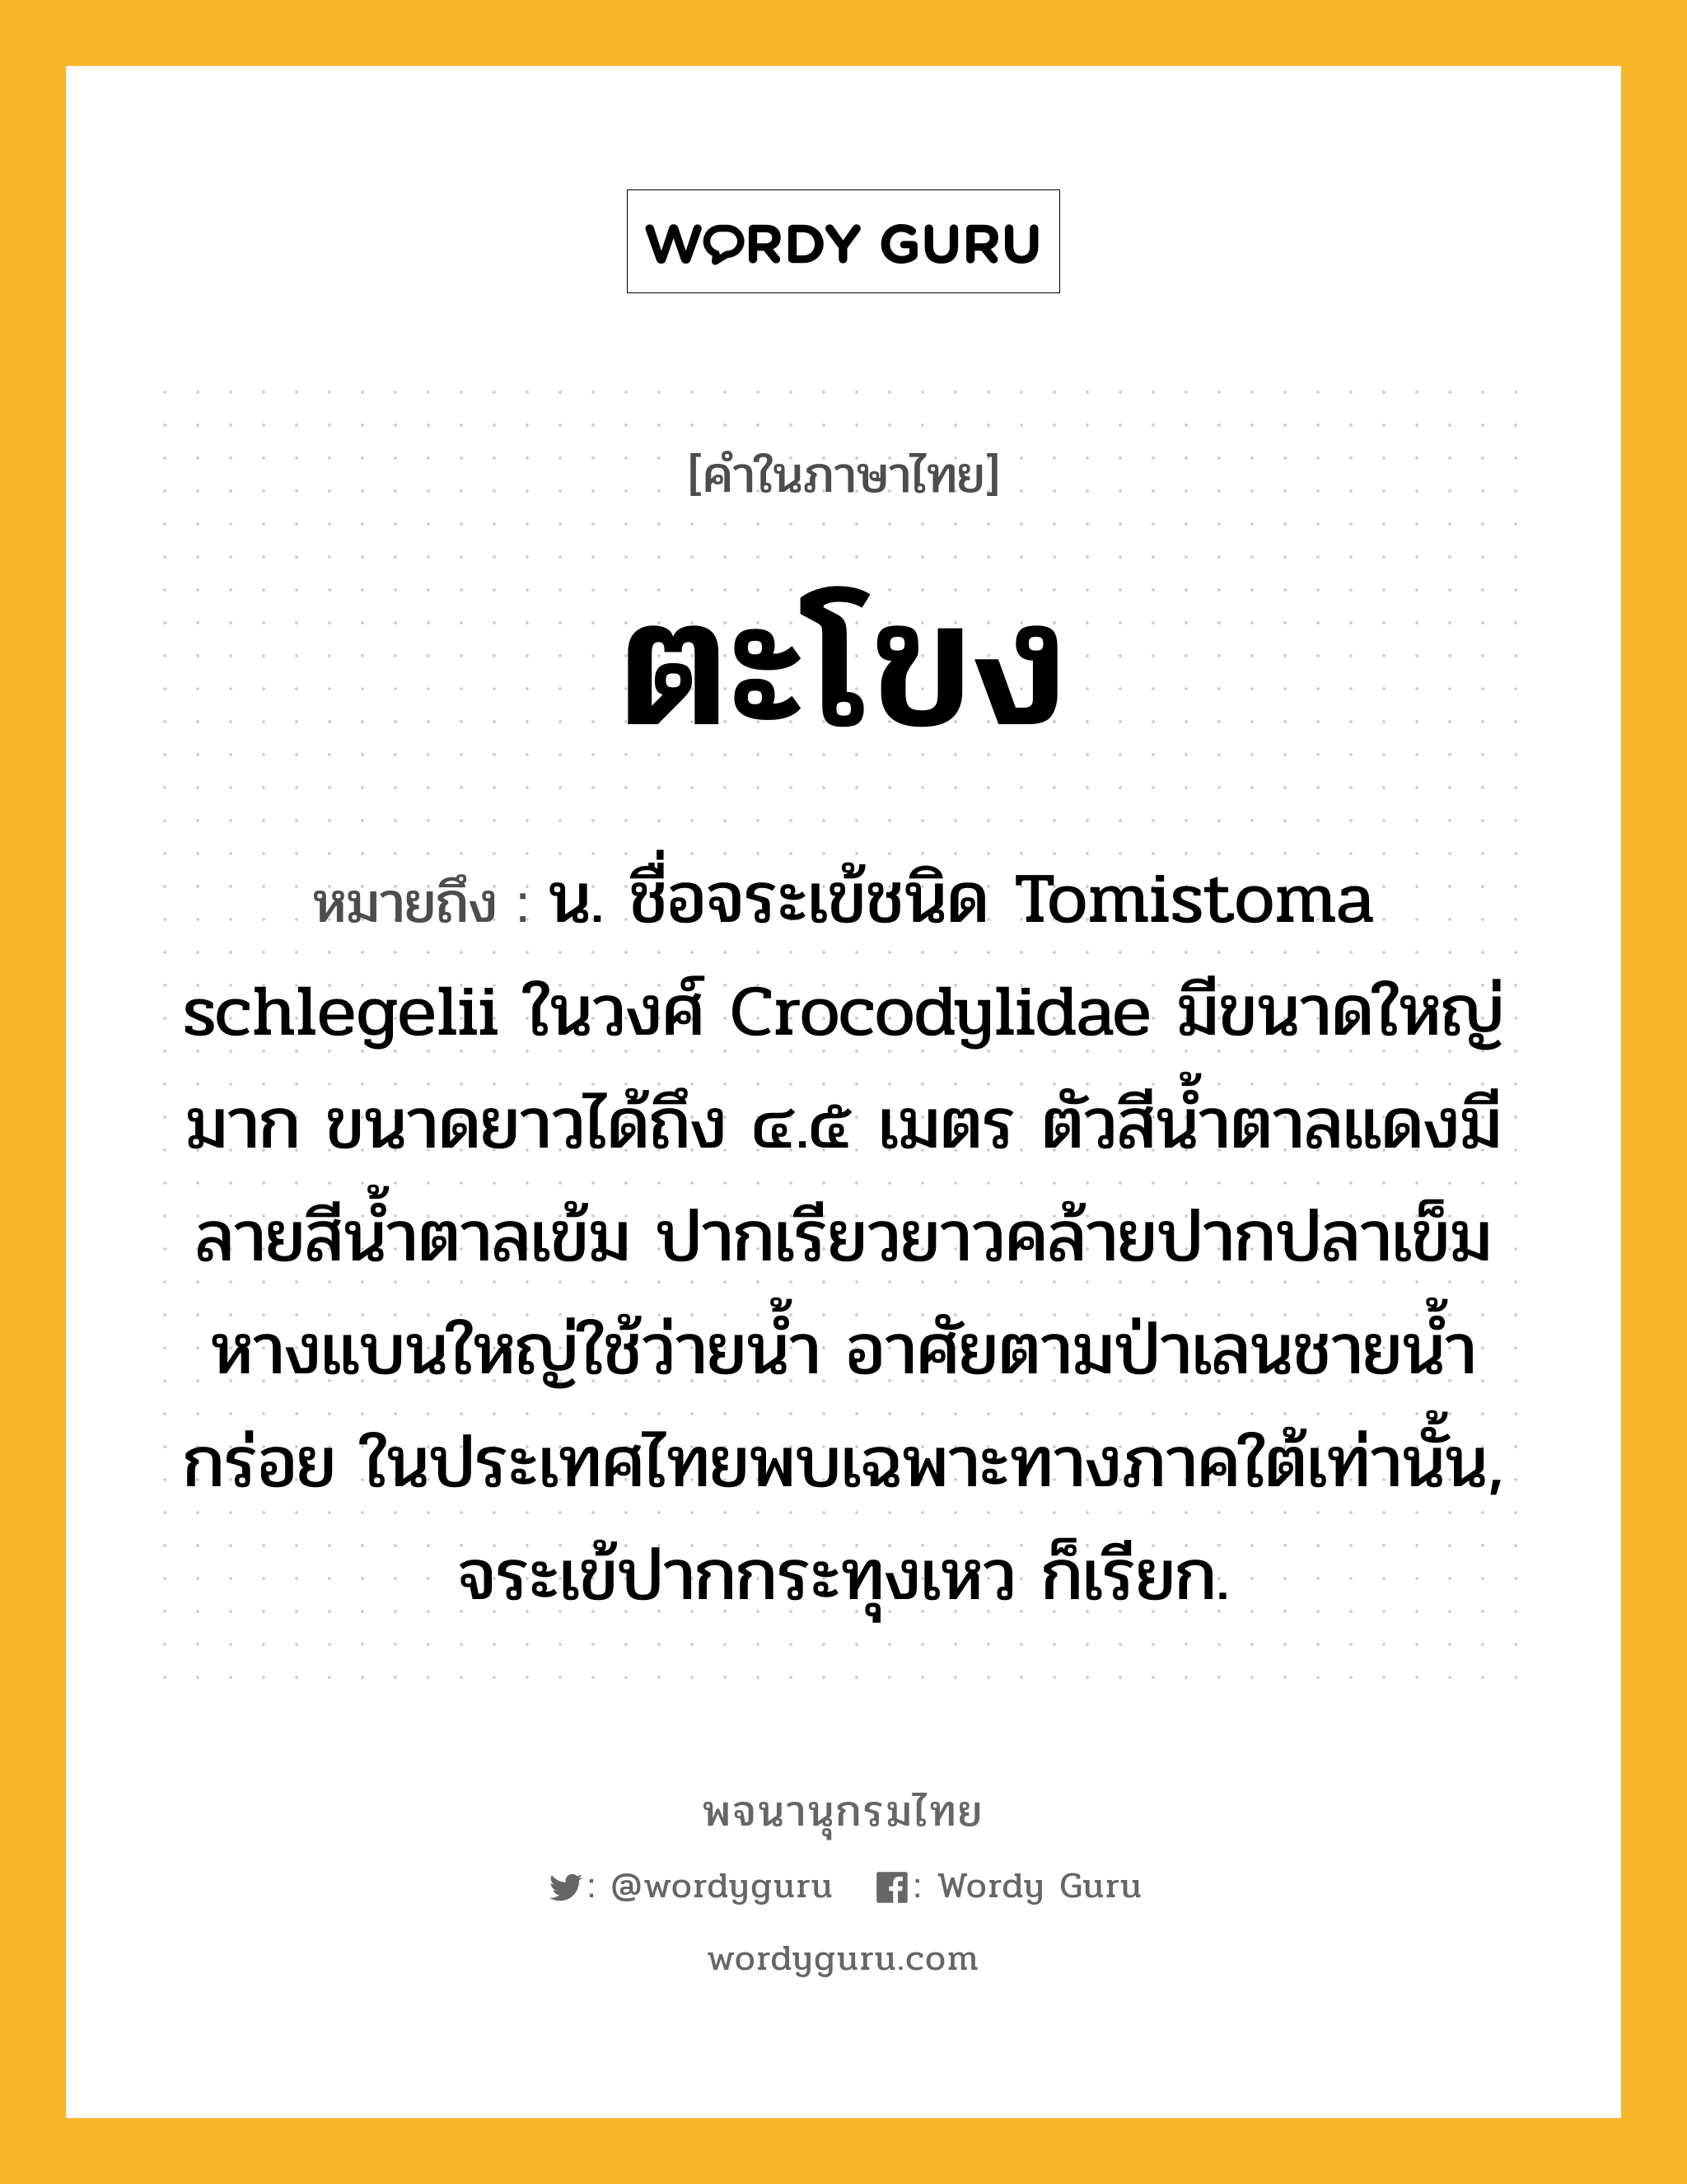 ตะโขง ความหมาย หมายถึงอะไร?, คำในภาษาไทย ตะโขง หมายถึง น. ชื่อจระเข้ชนิด Tomistoma schlegelii ในวงศ์ Crocodylidae มีขนาดใหญ่มาก ขนาดยาวได้ถึง ๔.๕ เมตร ตัวสีนํ้าตาลแดงมีลายสีนํ้าตาลเข้ม ปากเรียวยาวคล้ายปากปลาเข็ม หางแบนใหญ่ใช้ว่ายนํ้า อาศัยตามป่าเลนชายนํ้ากร่อย ในประเทศไทยพบเฉพาะทางภาคใต้เท่านั้น, จระเข้ปากกระทุงเหว ก็เรียก.